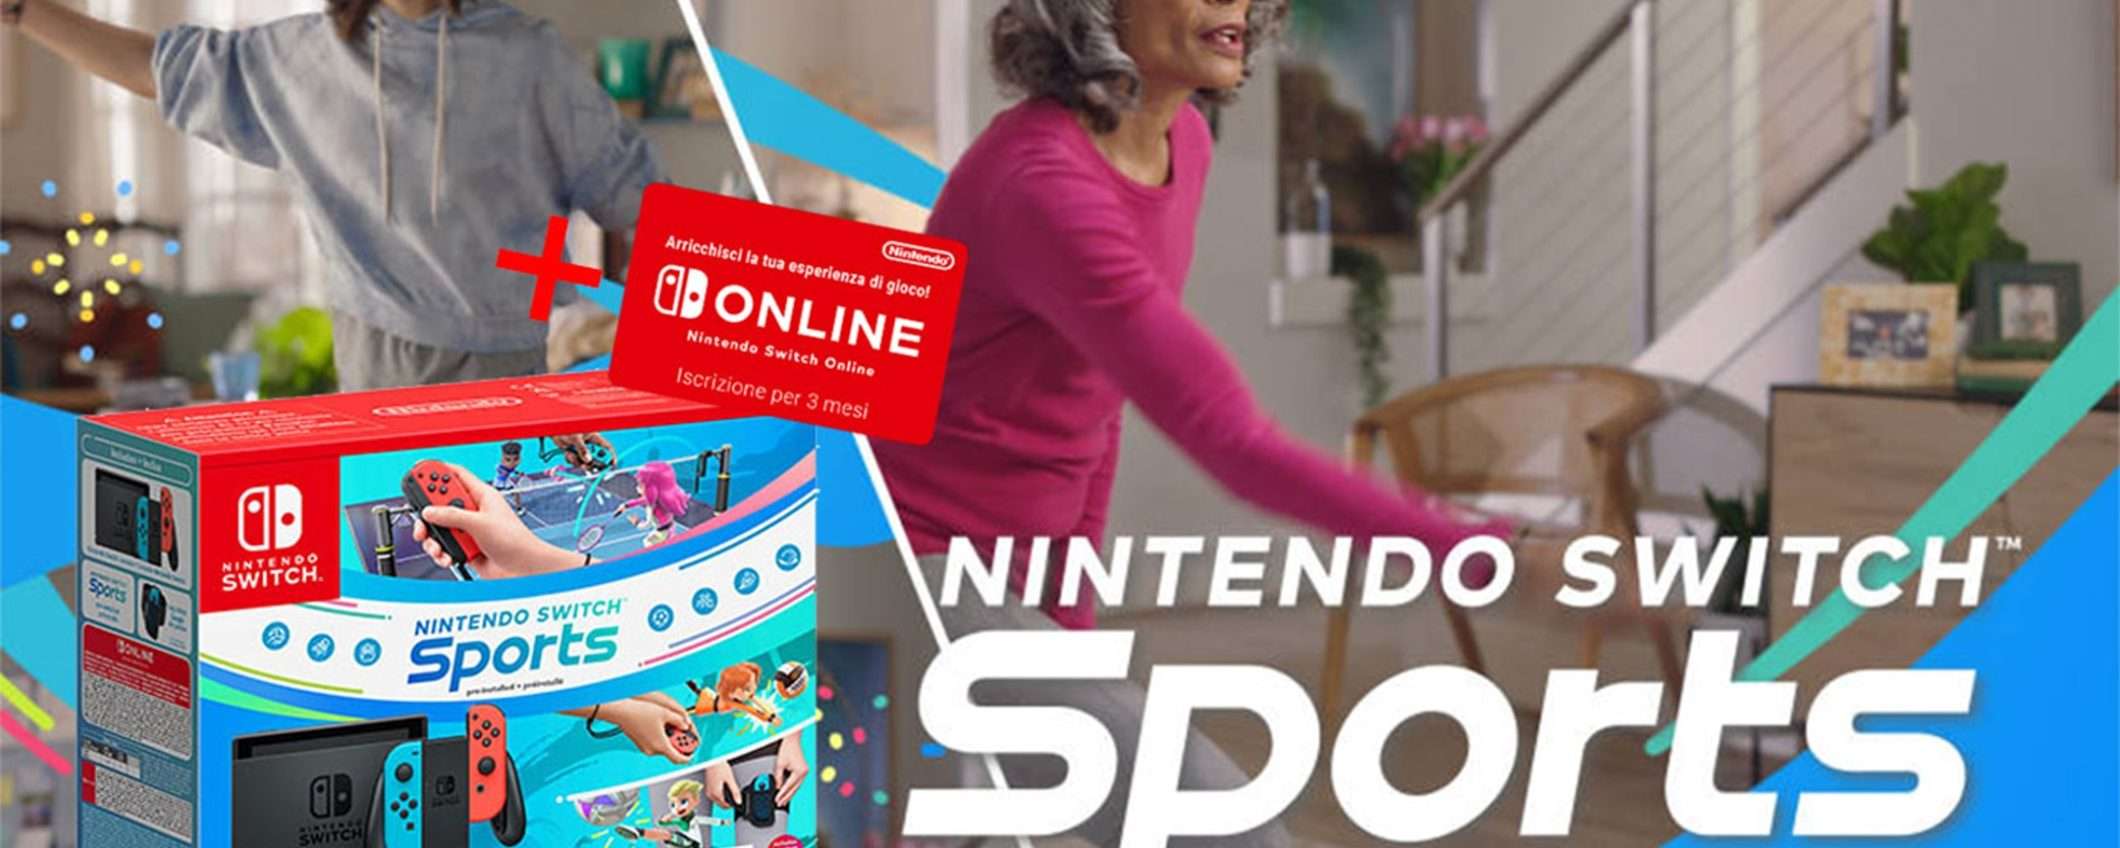 Nintendo Switch + Switch Sports a un prezzo PAZZESCO su eBay